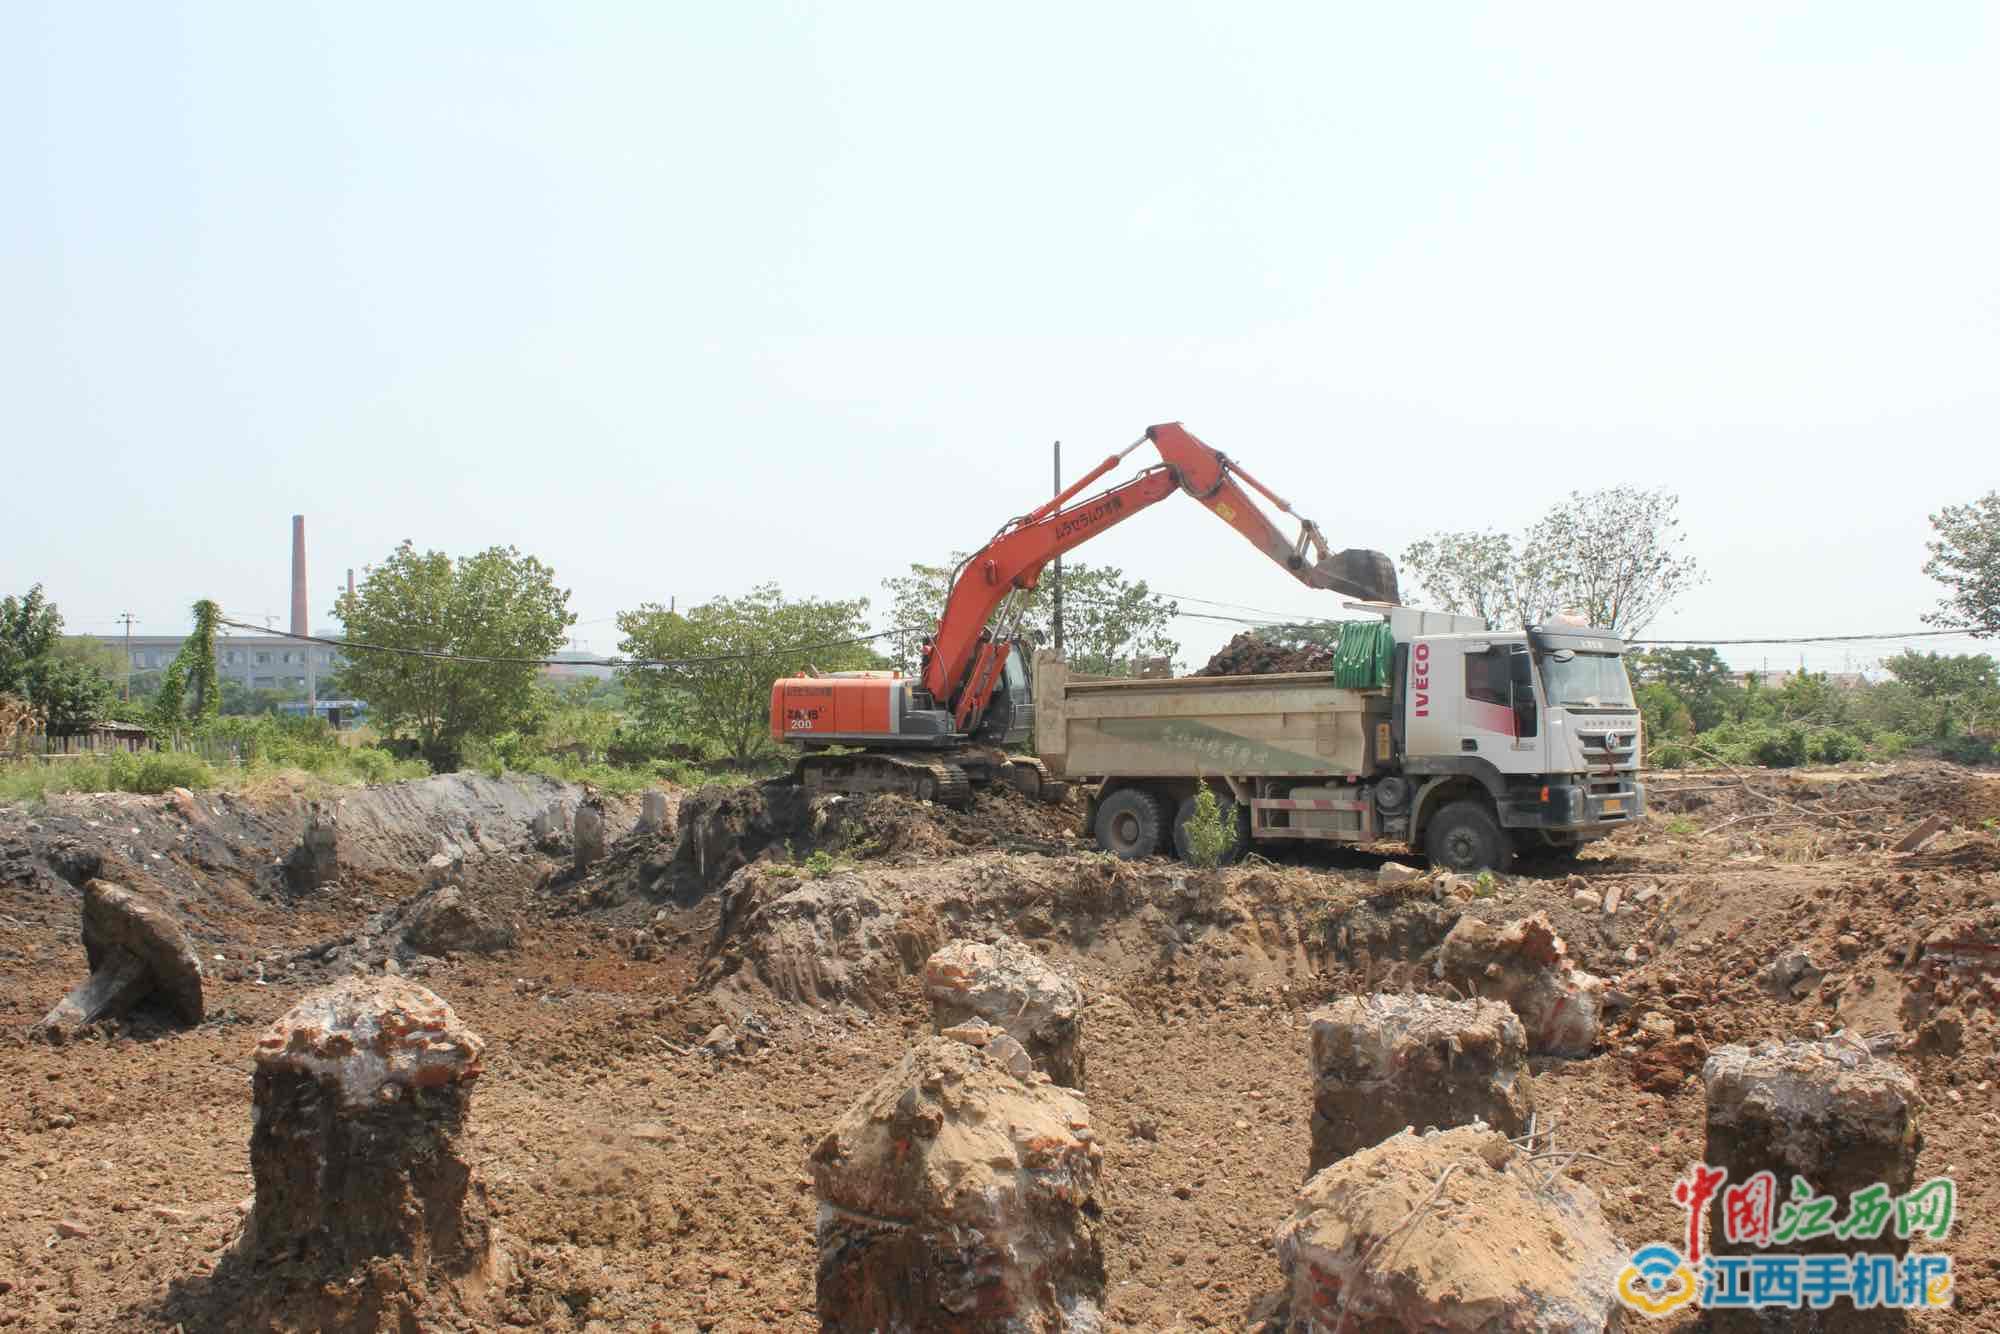 南昌青山湖区江安学校异地重建工程即将开工 预计2019年8月完工